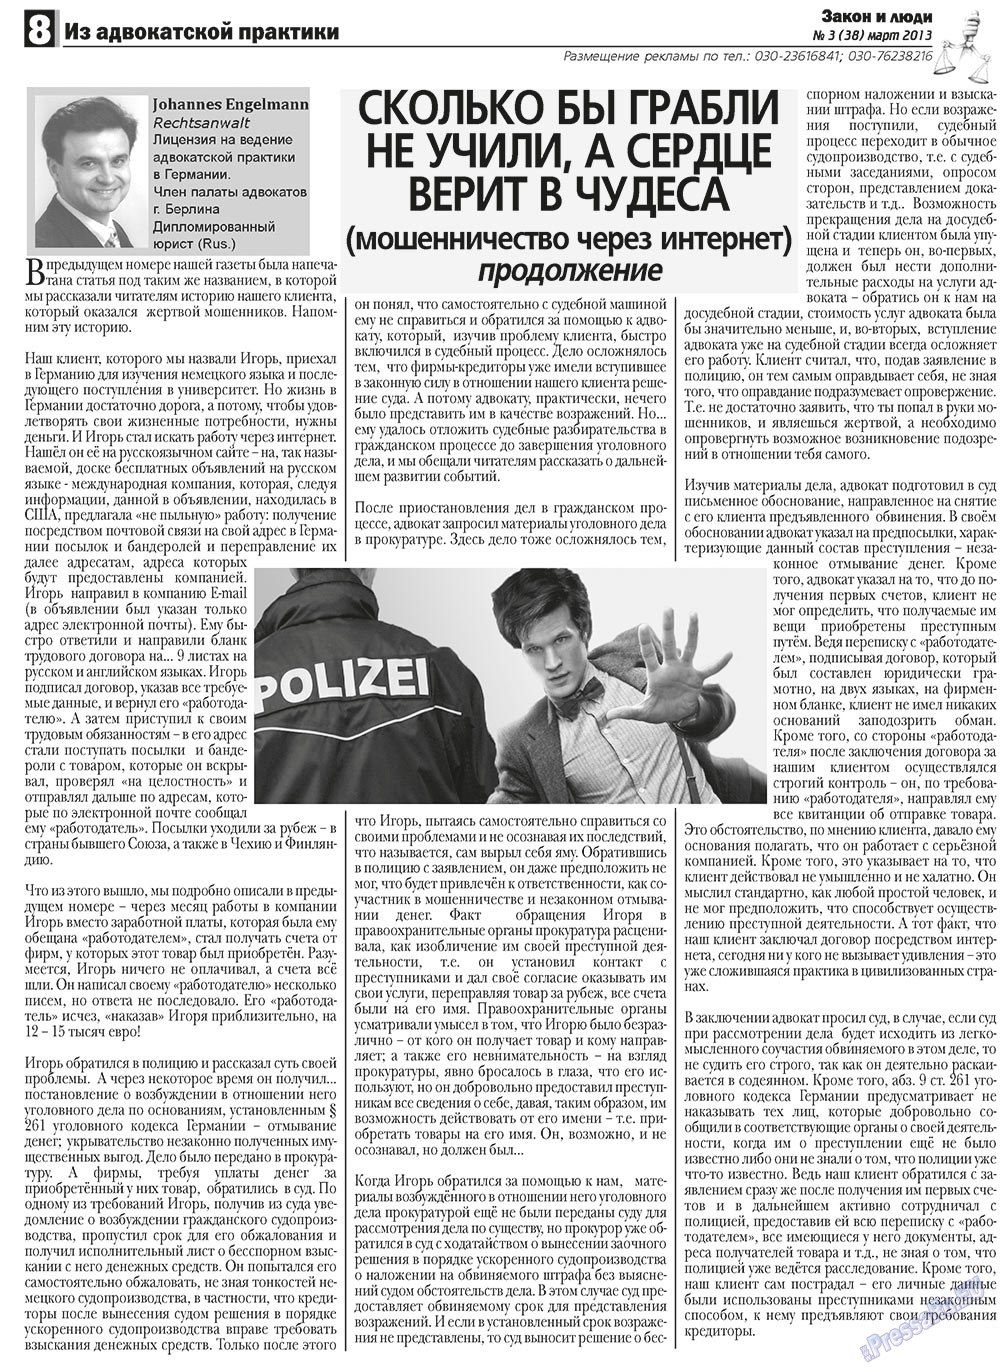 Закон и люди, газета. 2013 №3 стр.8